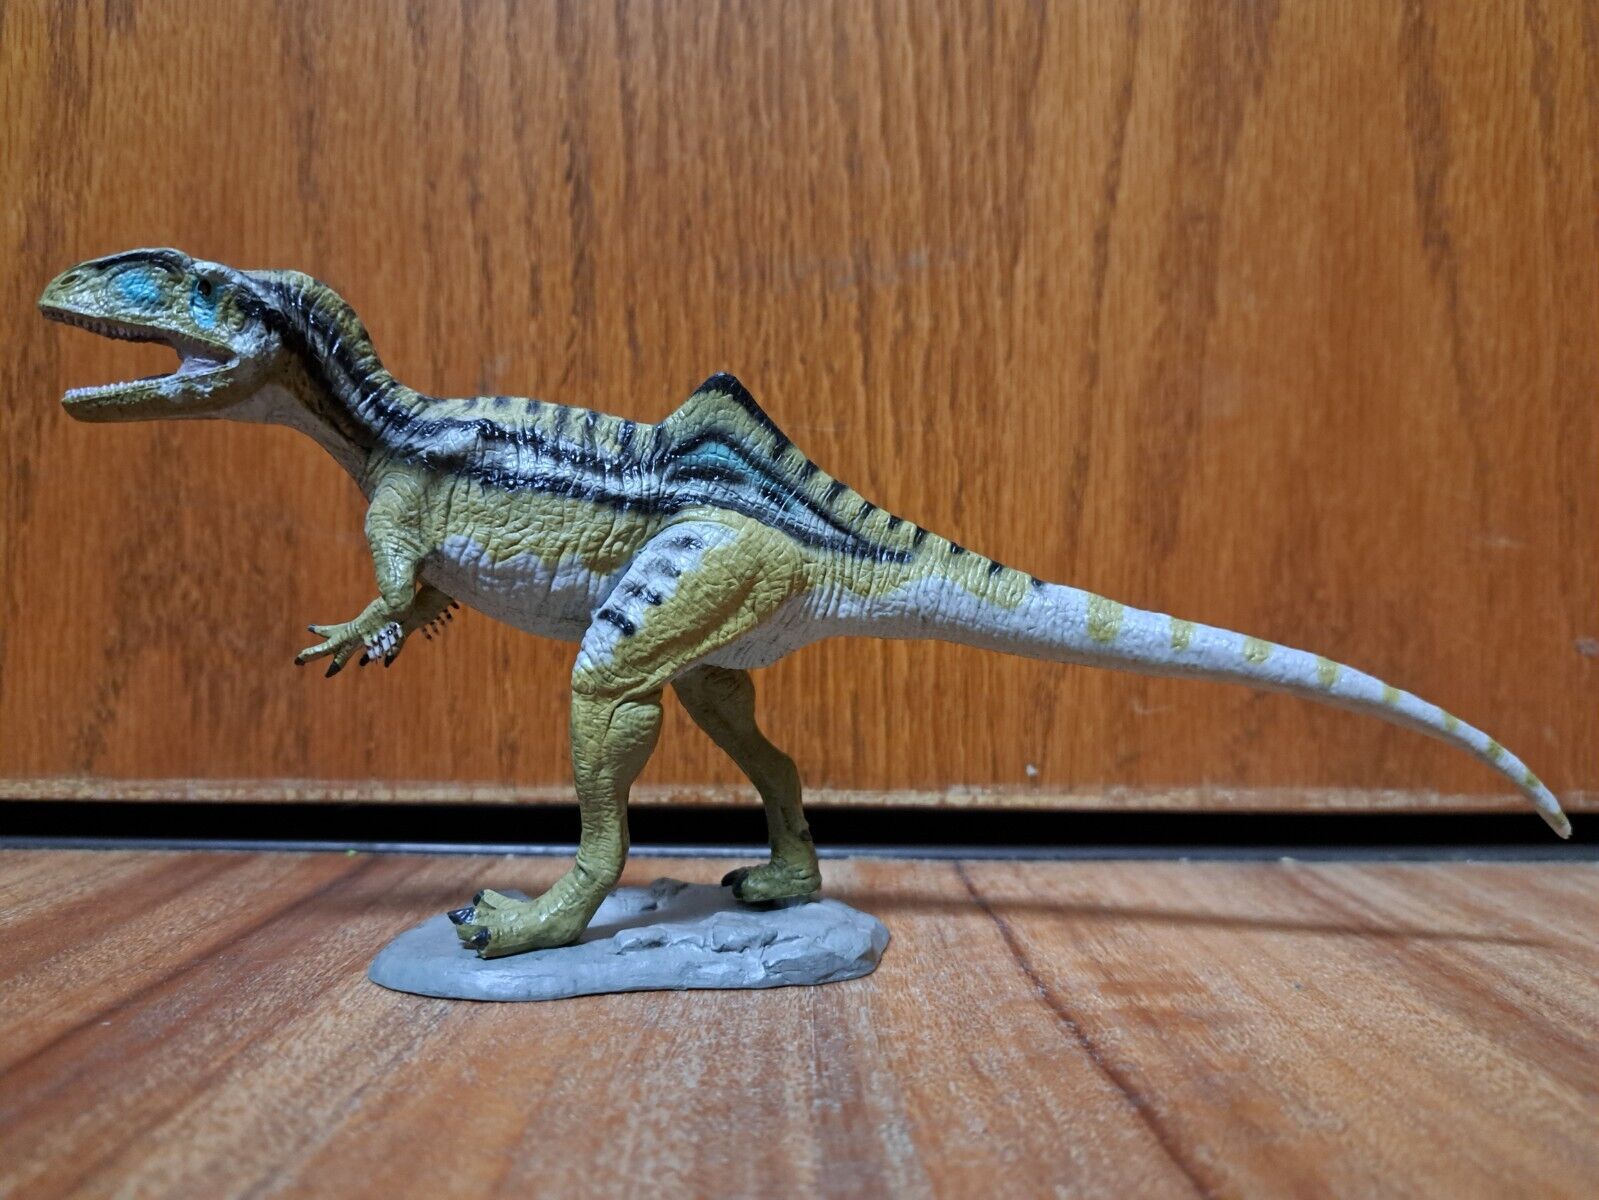 FAVORITE 2015 Fukui Museum Exclusive CONCAVENATOR Rare Dinosaur Figure